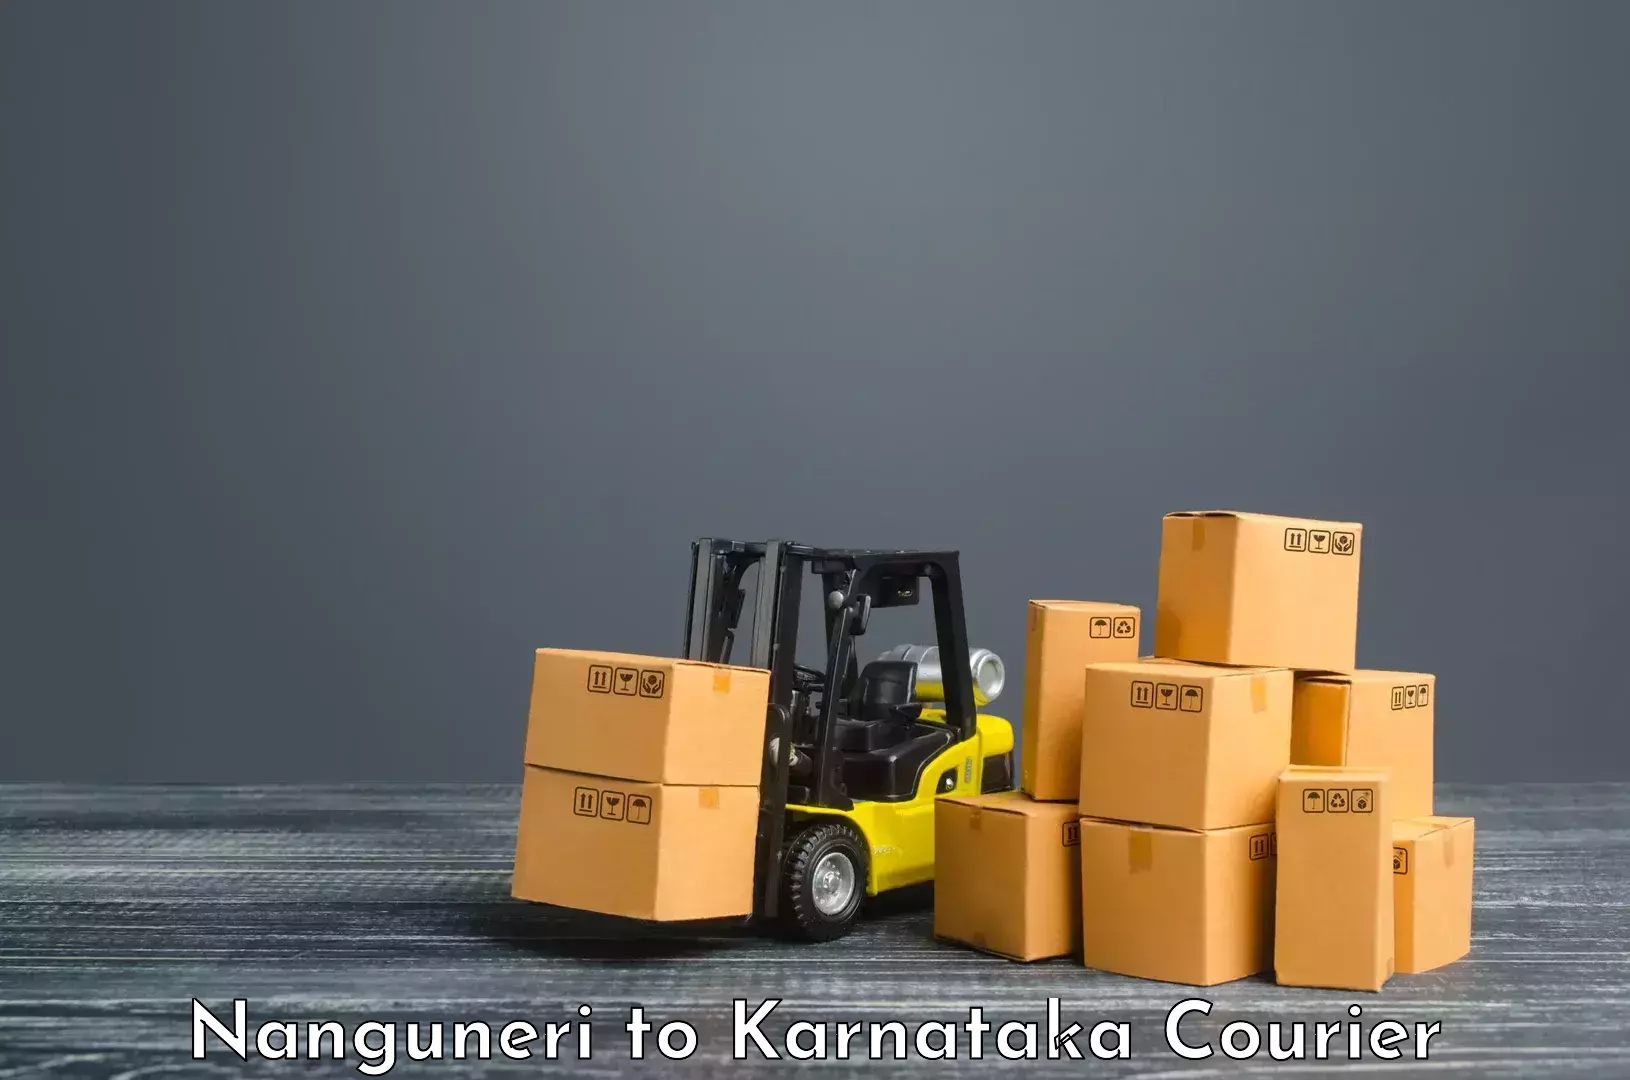 Affordable parcel service Nanguneri to Karnataka